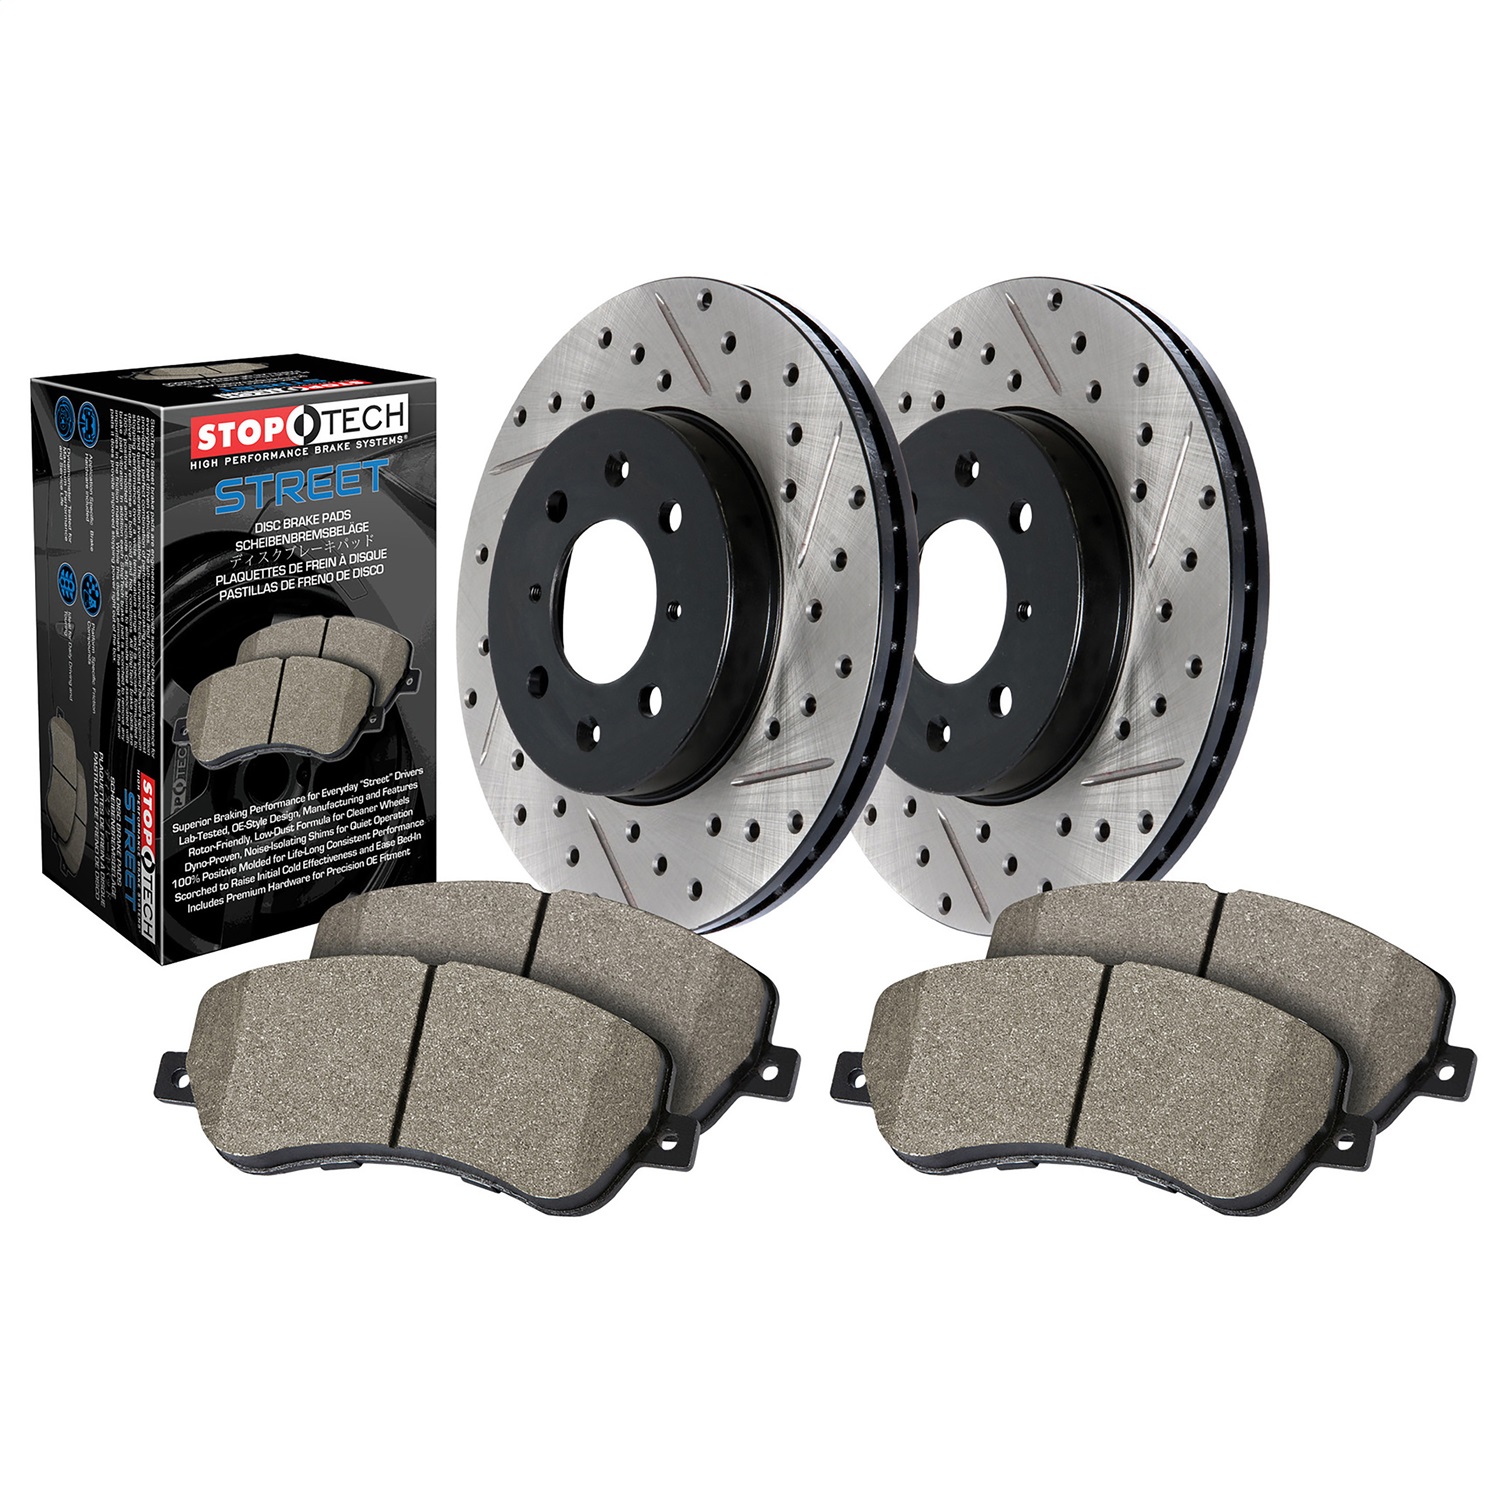 StopTech 938.40003 Disc Brake Upgrade Kit